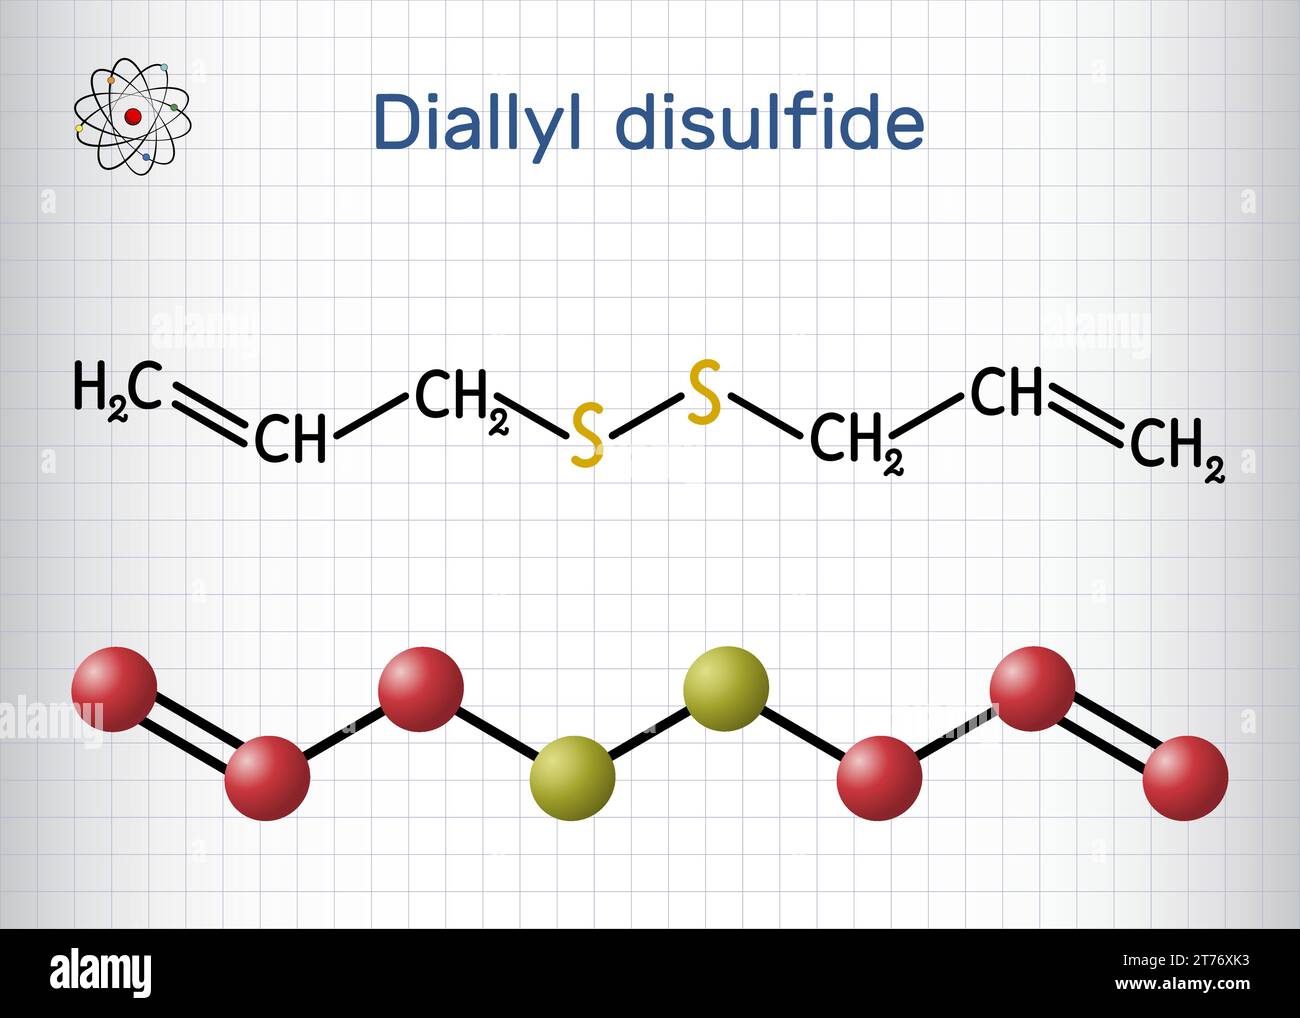 Disulfure de diallyle, molécule de DADS. Formule chimique structurale, modèle moléculaire. Feuille de papier dans une cage. Illustration de Vecteur